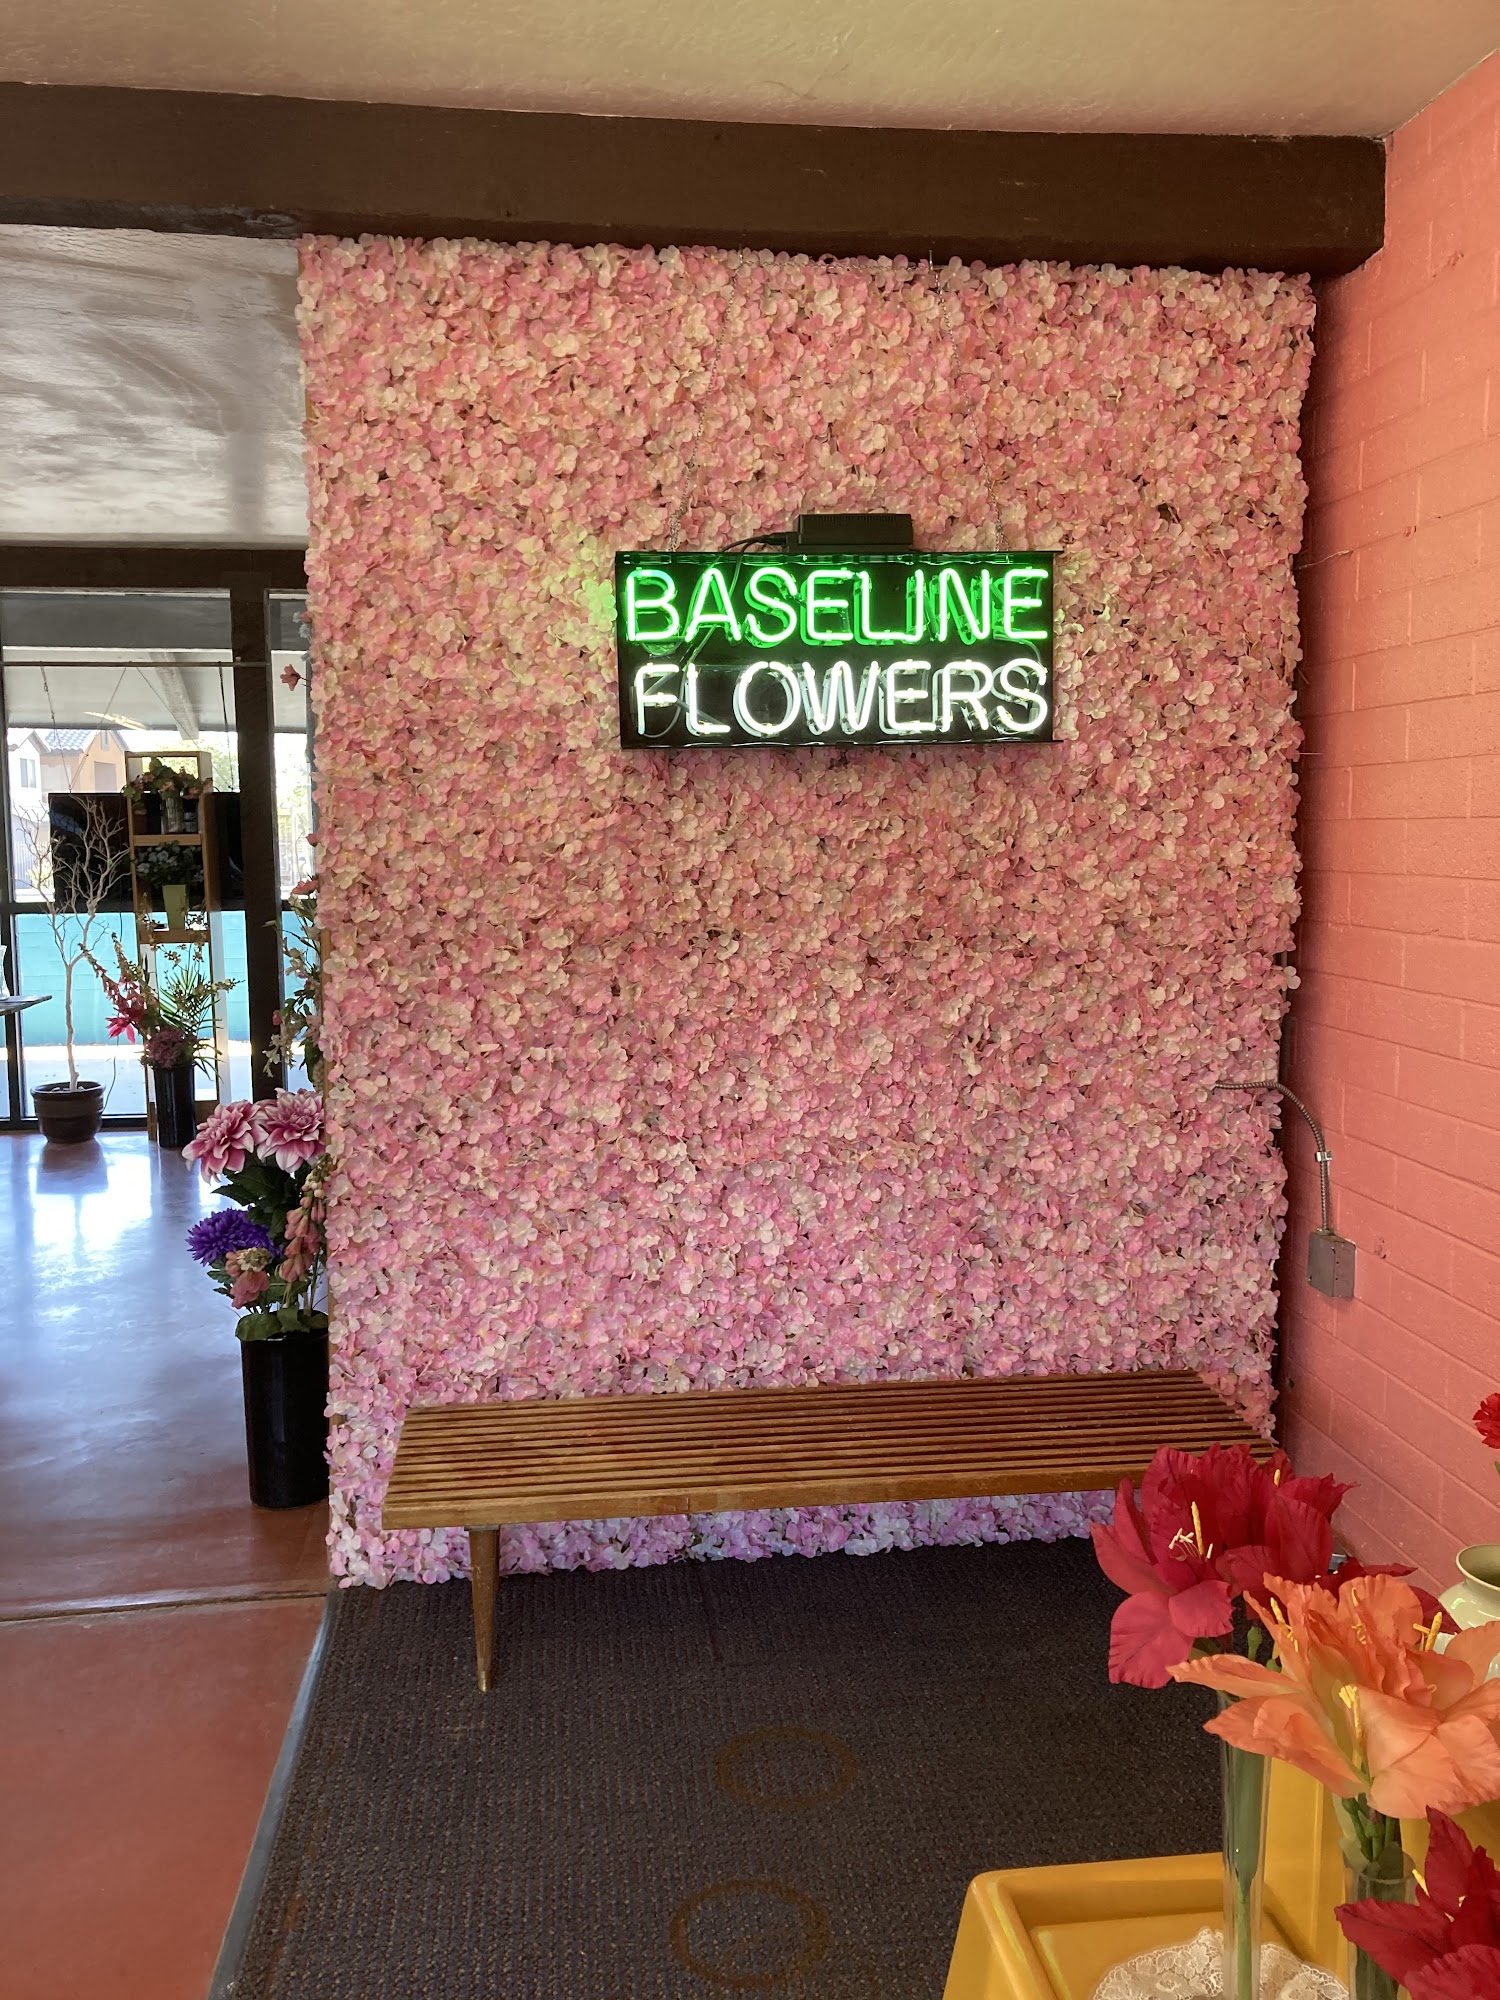 Baseline Flowers